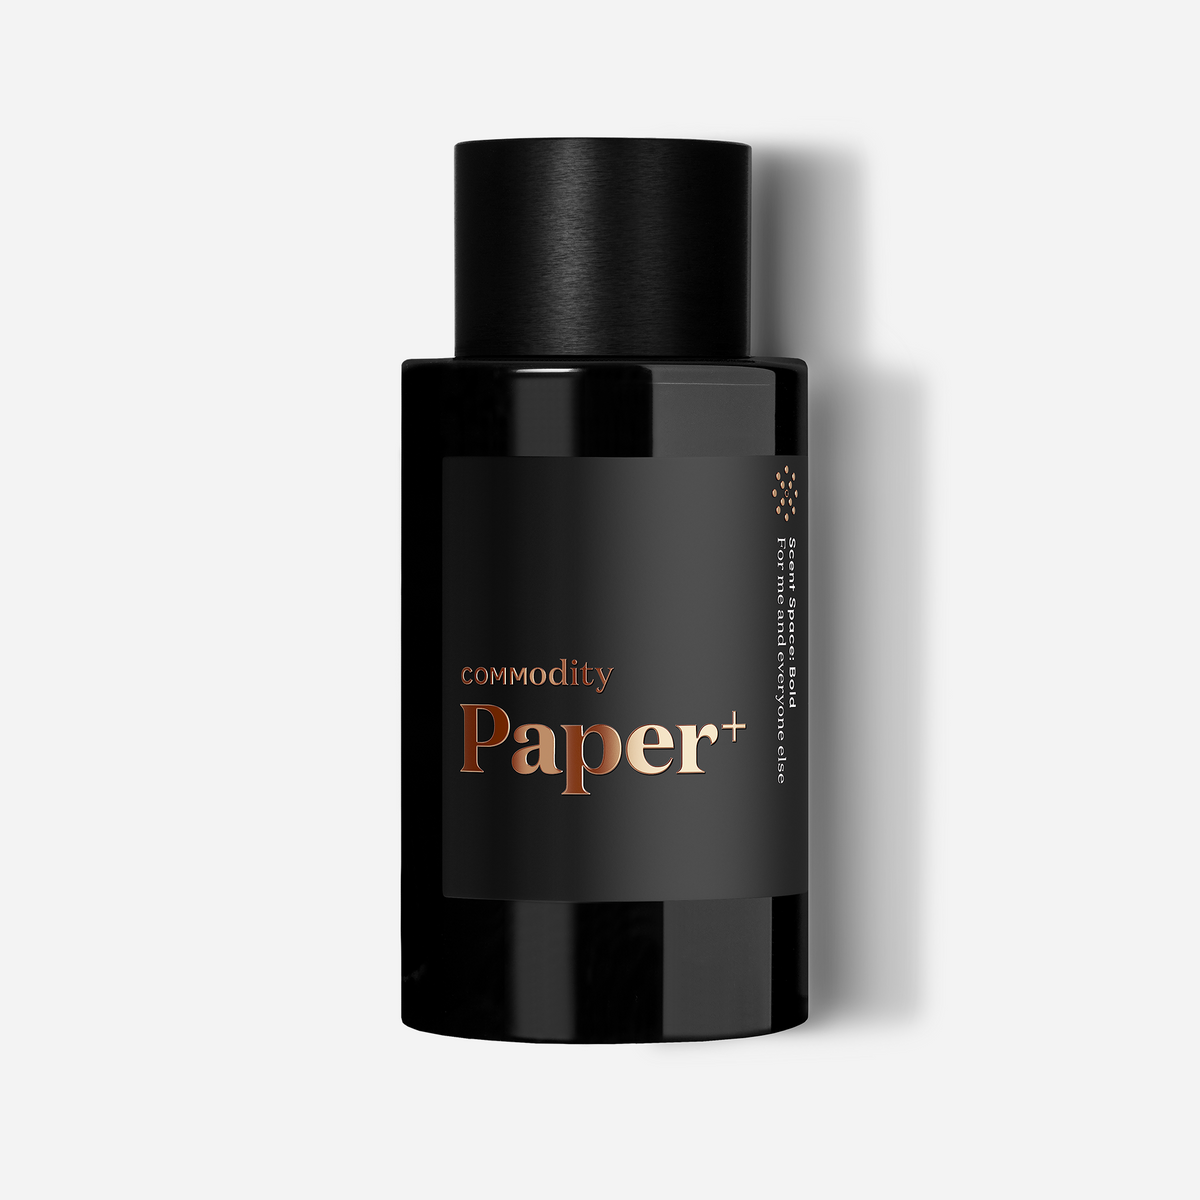 Paper+ – CommodityUS